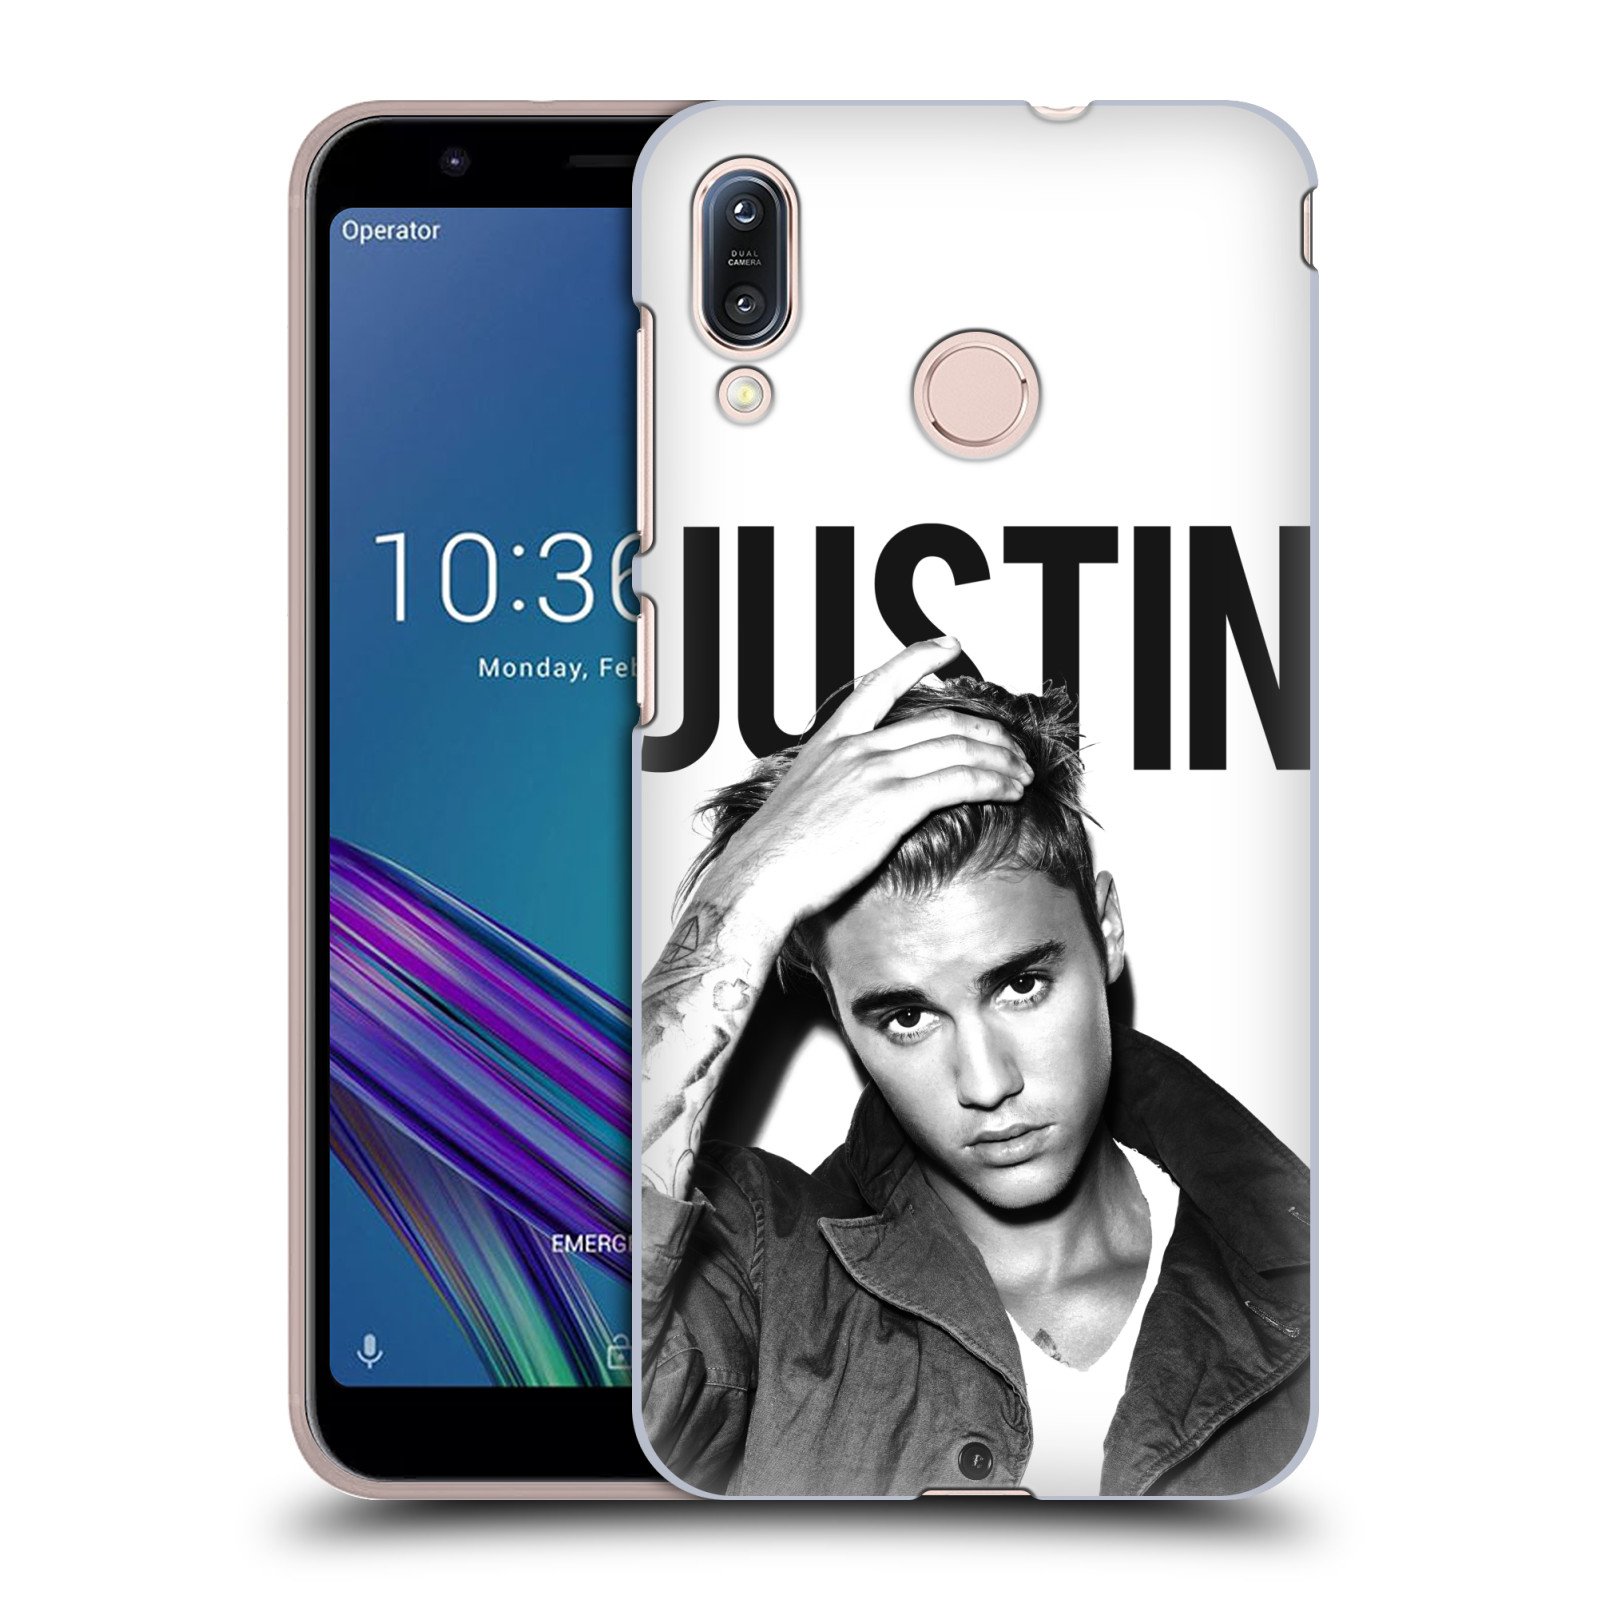 Pouzdro na mobil Asus Zenfone Max M1 (ZB555KL) - HEAD CASE - Justin Bieber foto Purpose černá a bílá